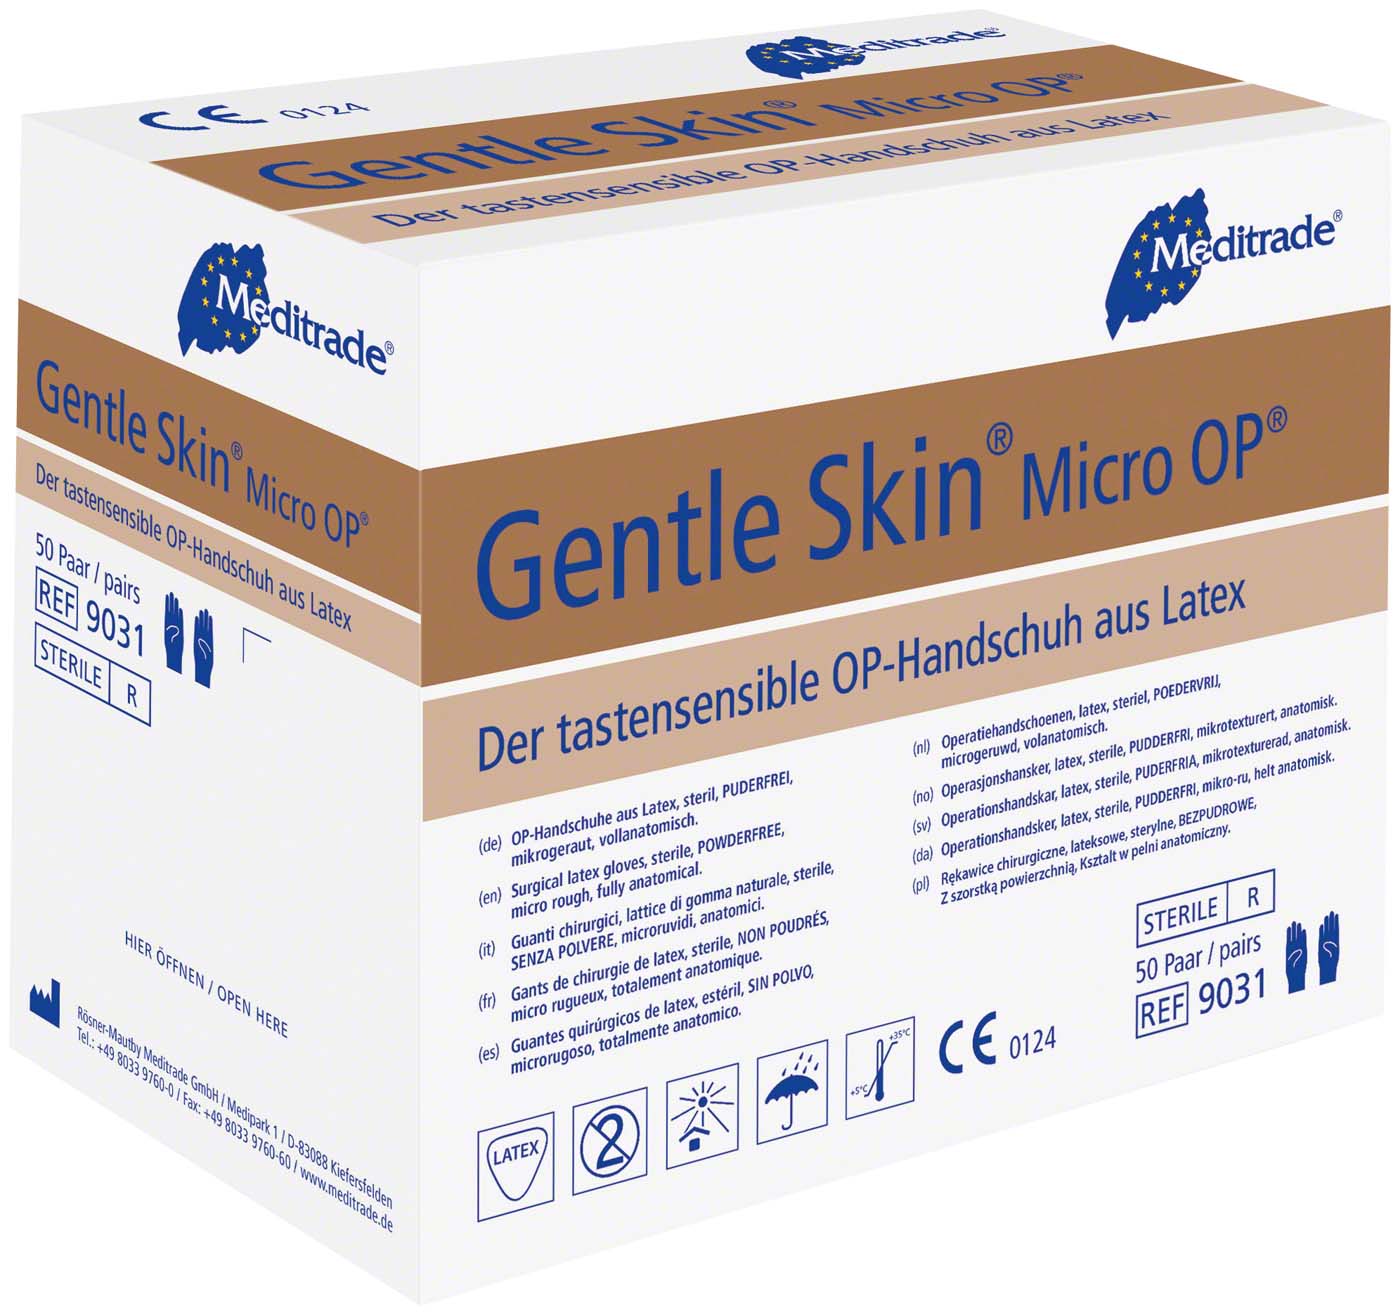 Gentle Skin Micro OP Meditrade